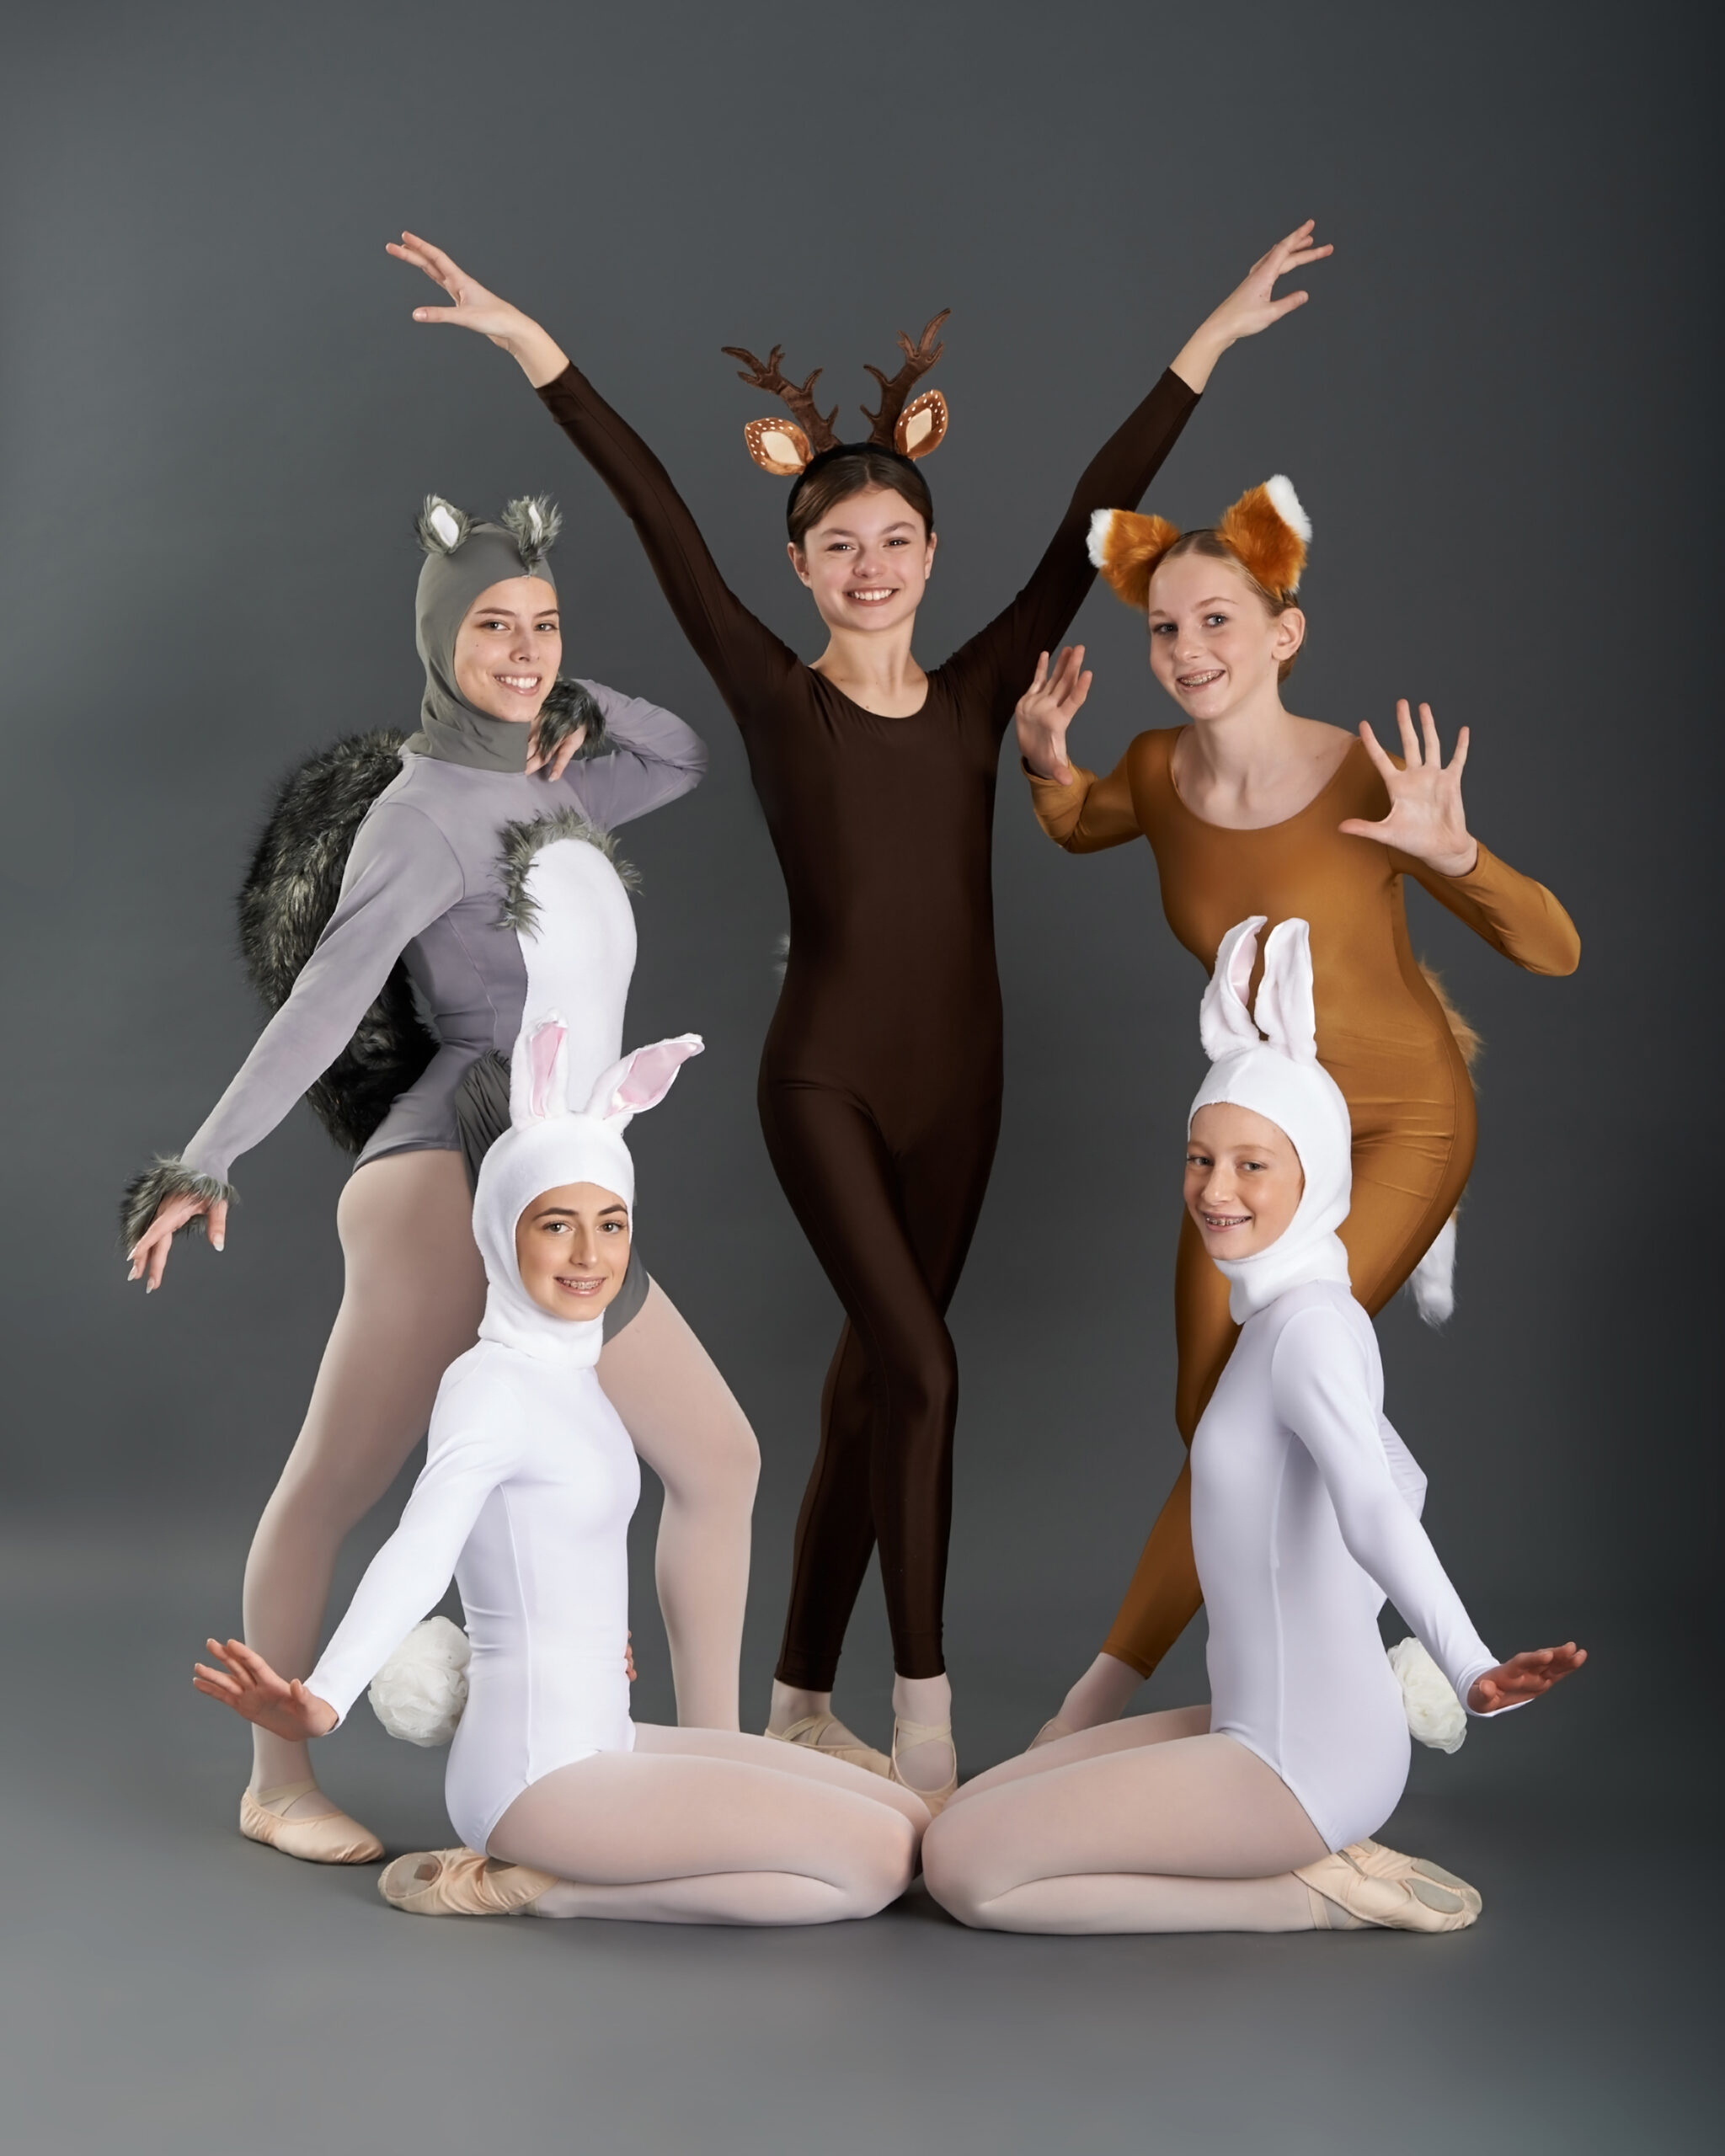 dance ensemble dancers posing in animal costumes